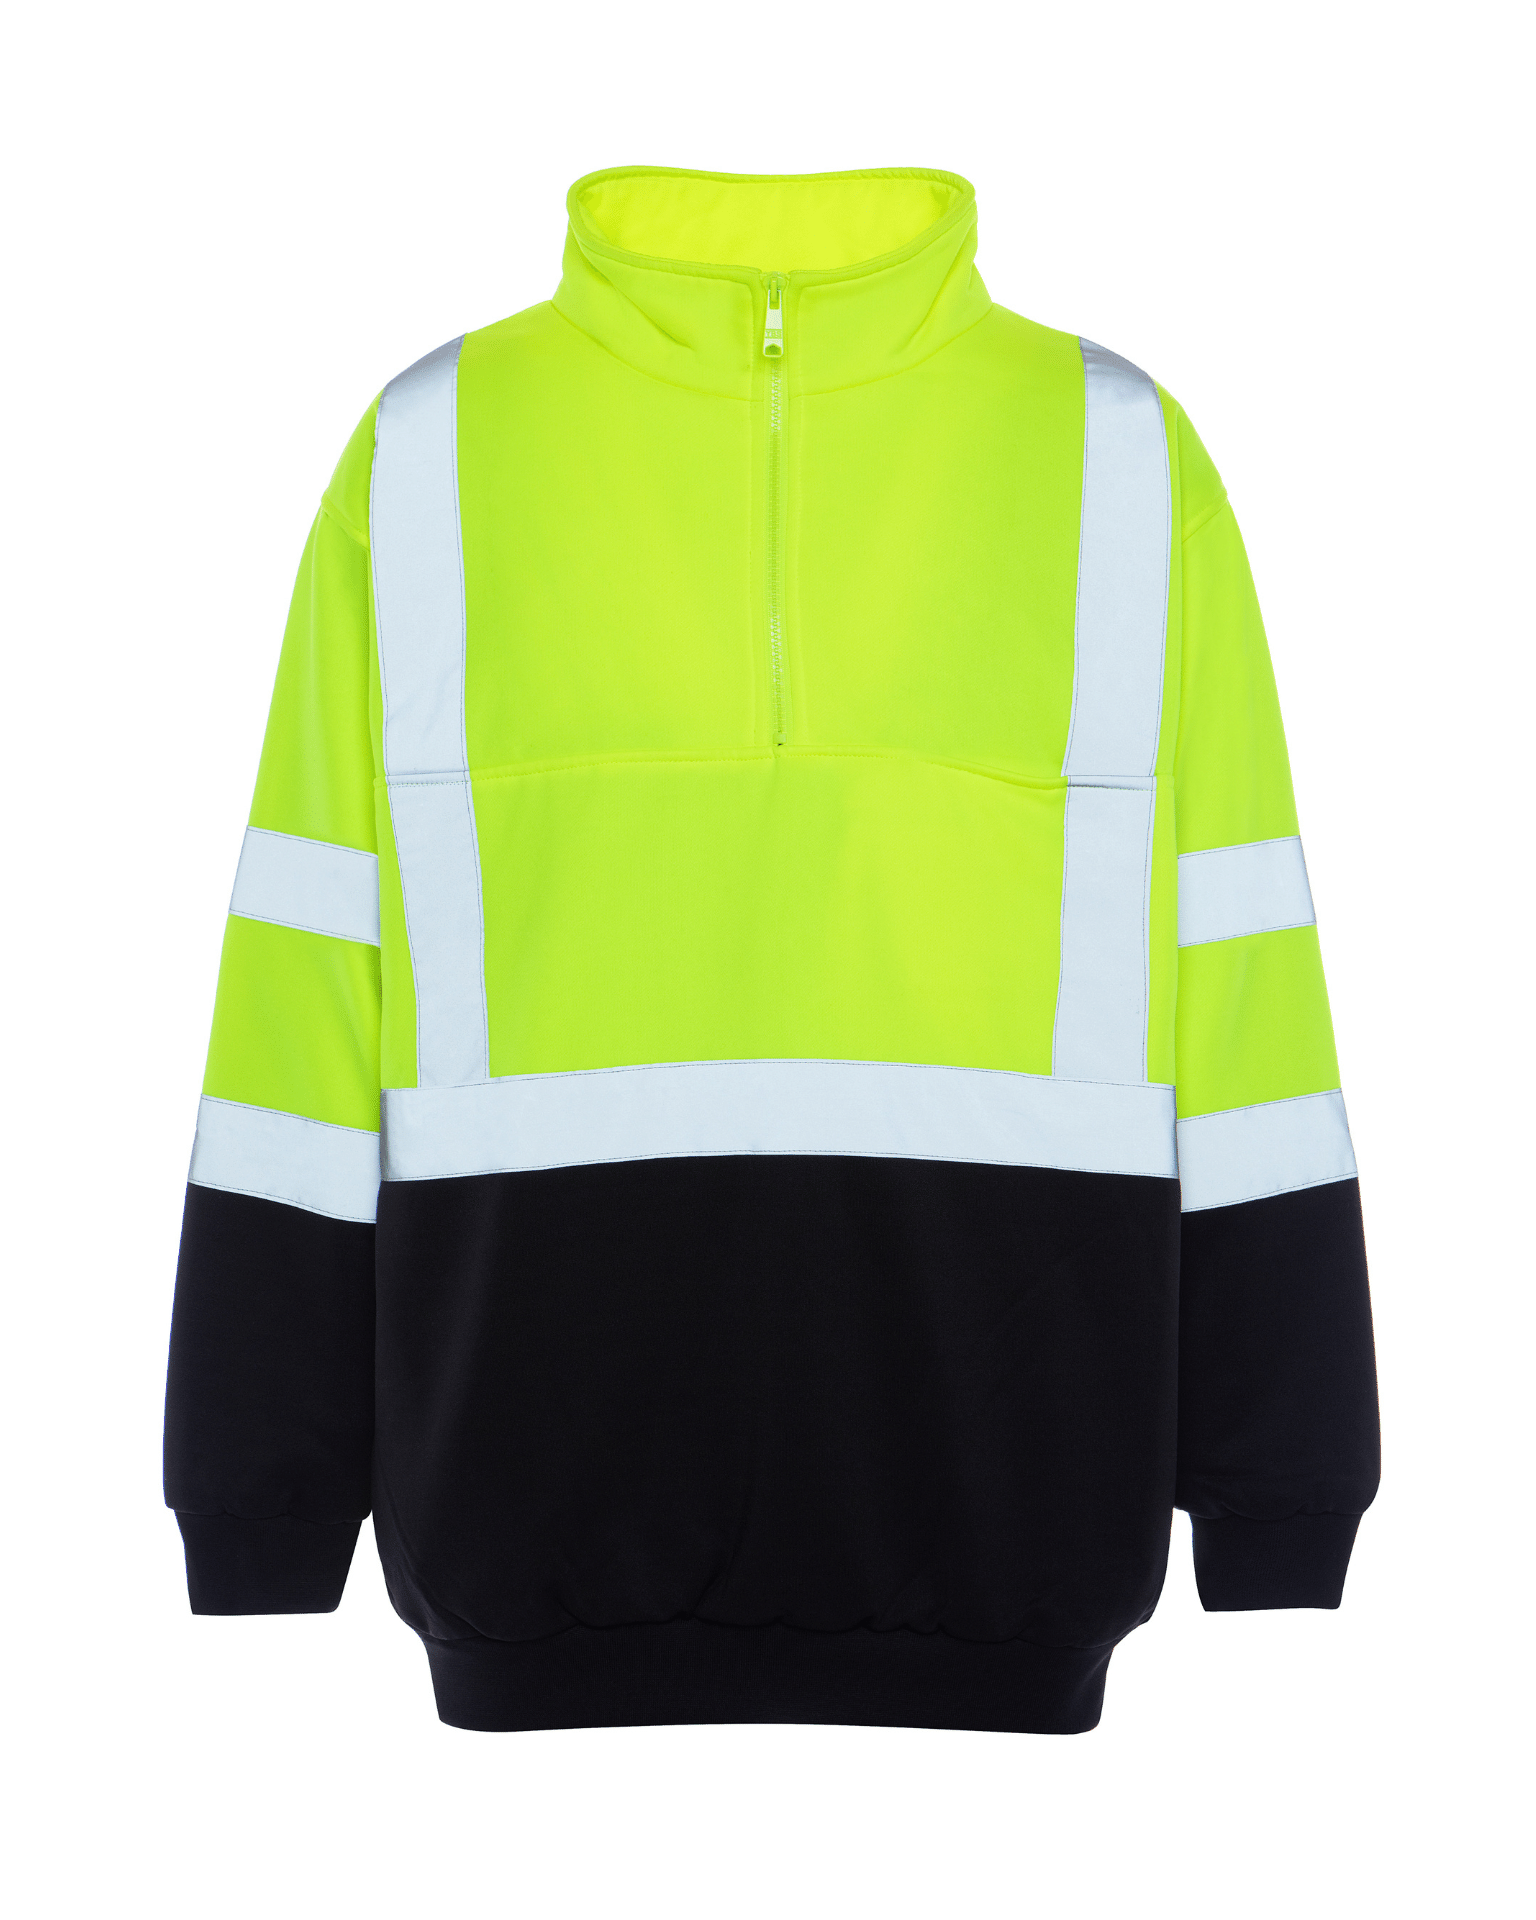 UPA542 1/4 Zip Soft Shell Pullover Sweatshirt - Utility Pro Wear